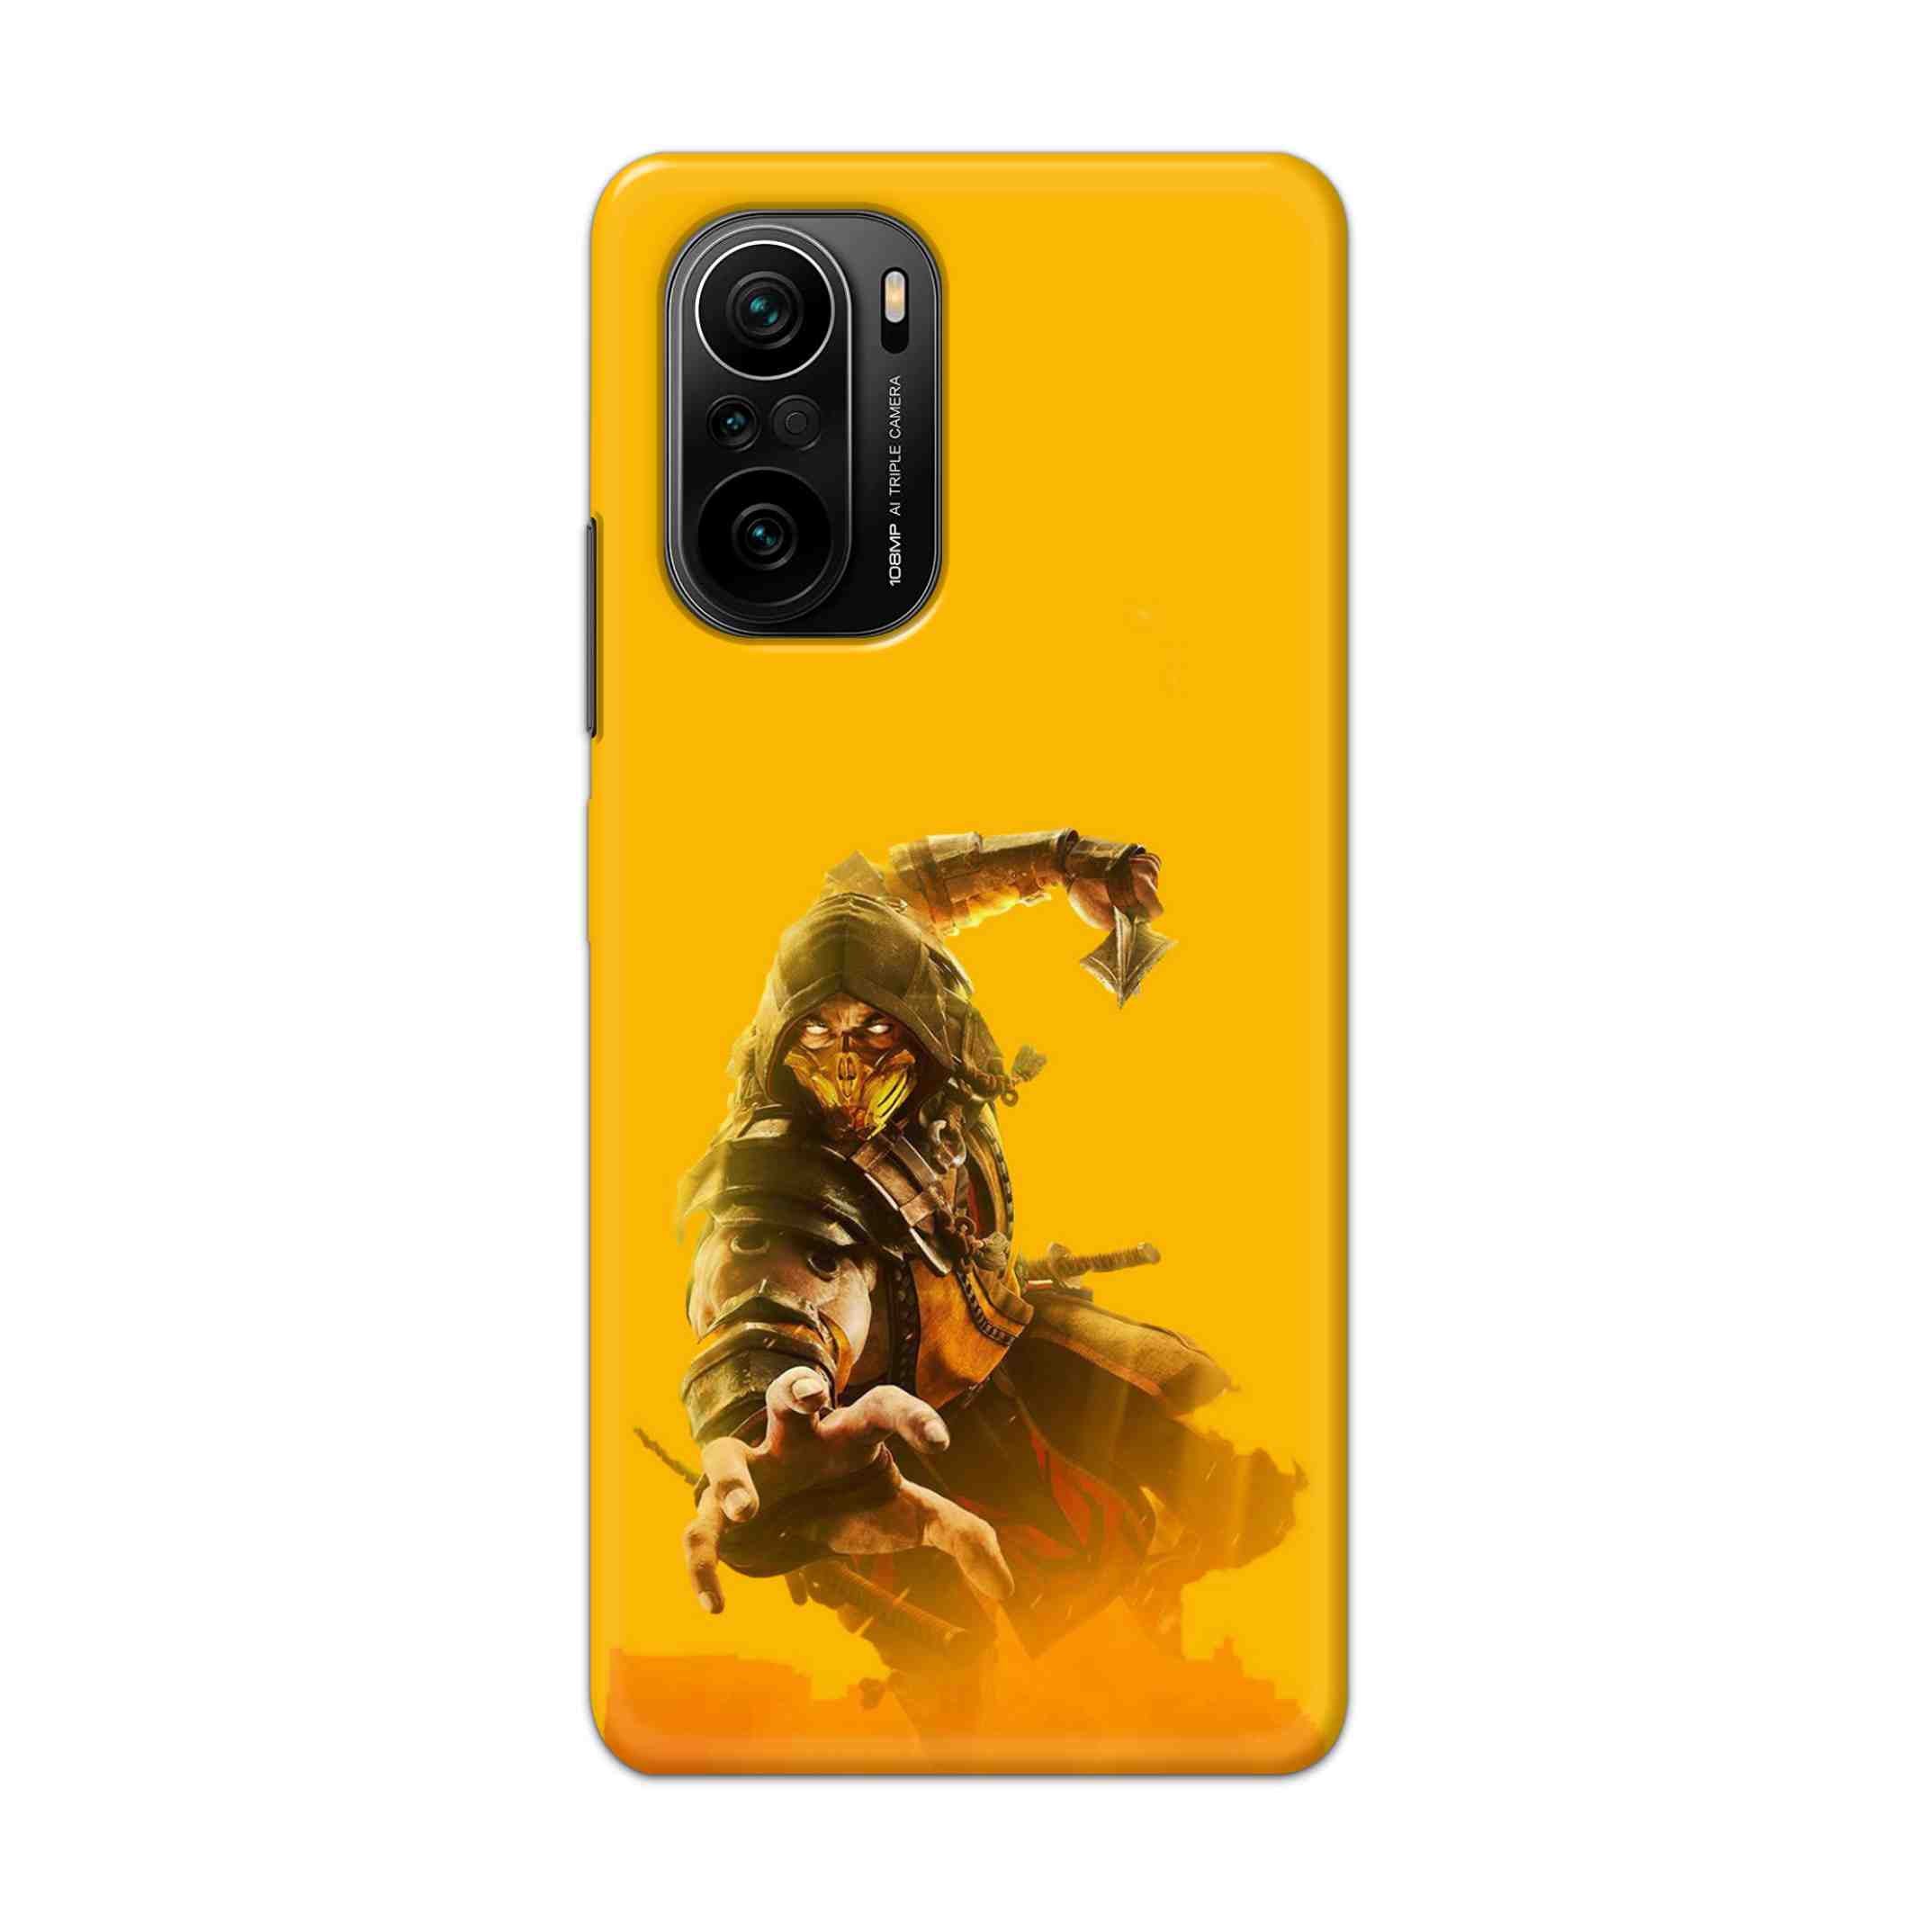 Buy Mortal Kombat Hard Back Mobile Phone Case Cover For Mi 11i Online